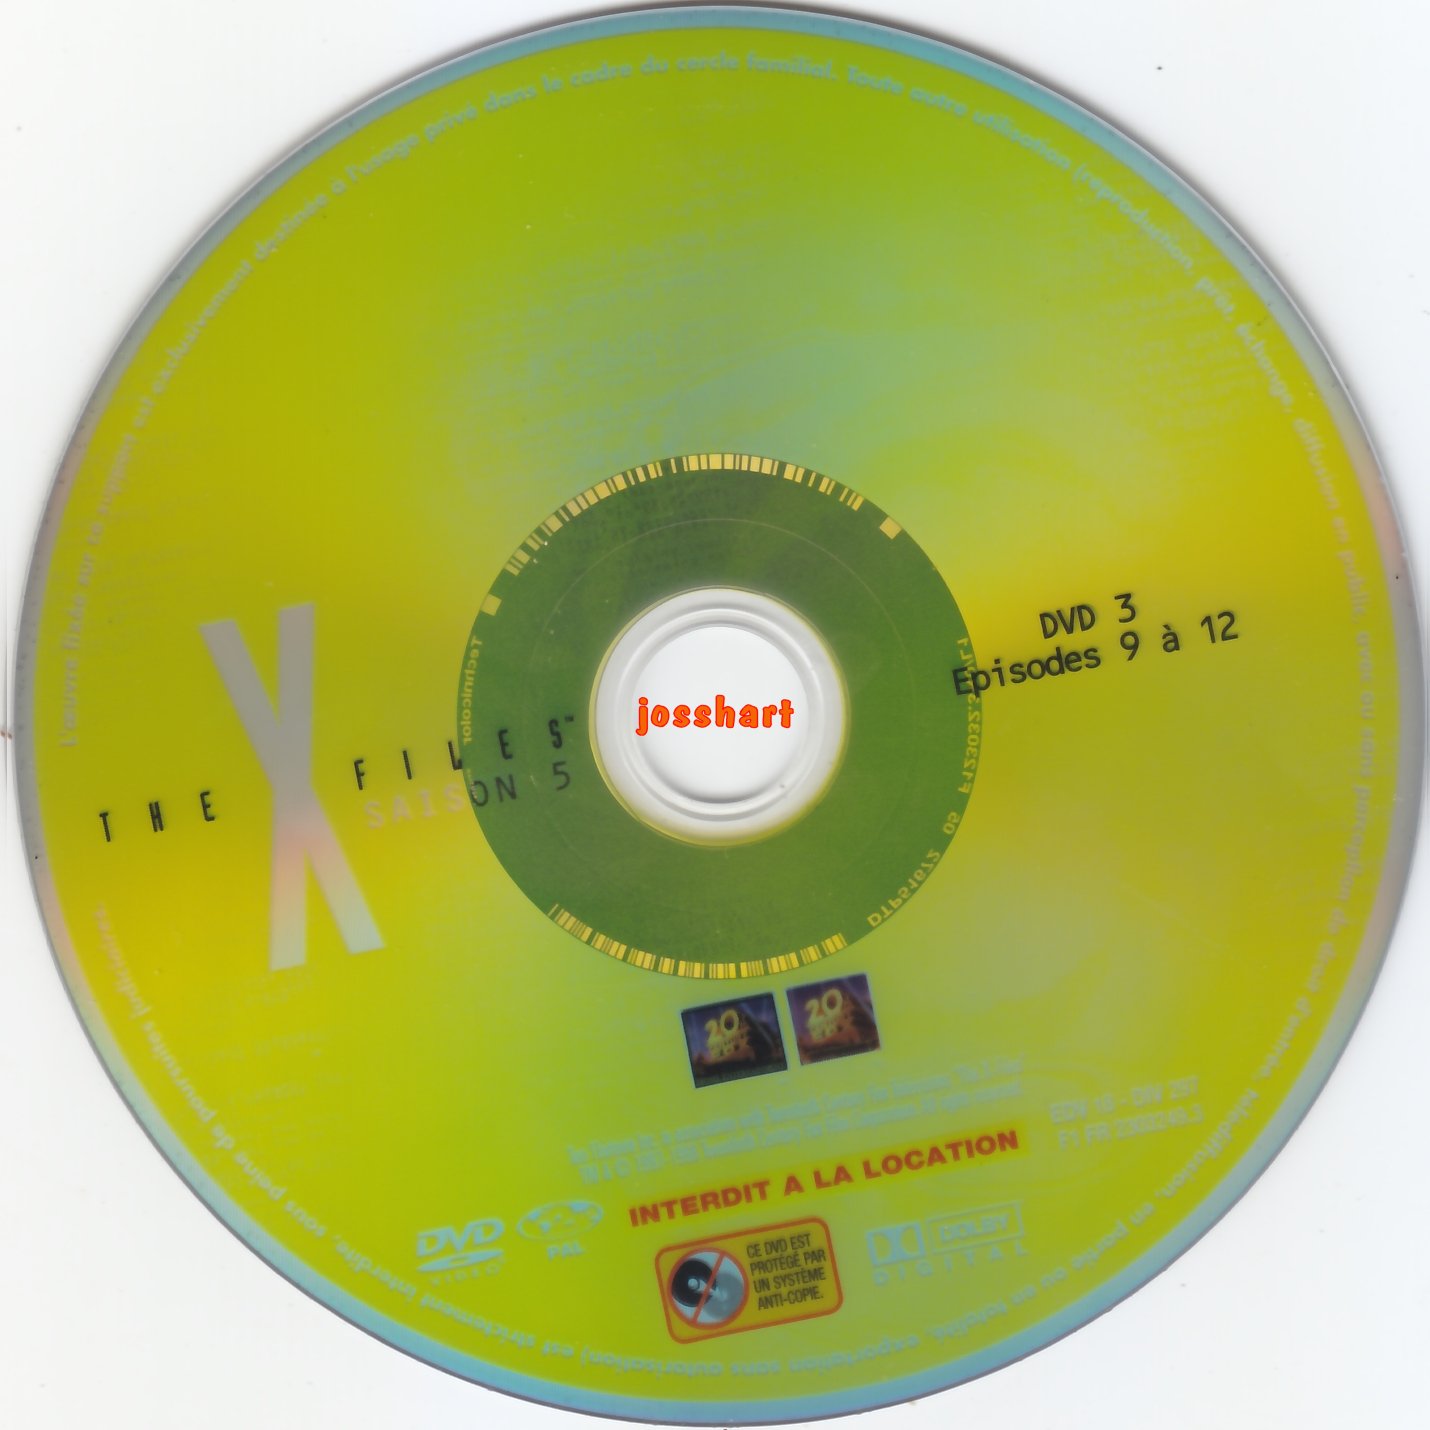 The X Files Saison 5 DVD 3 v2